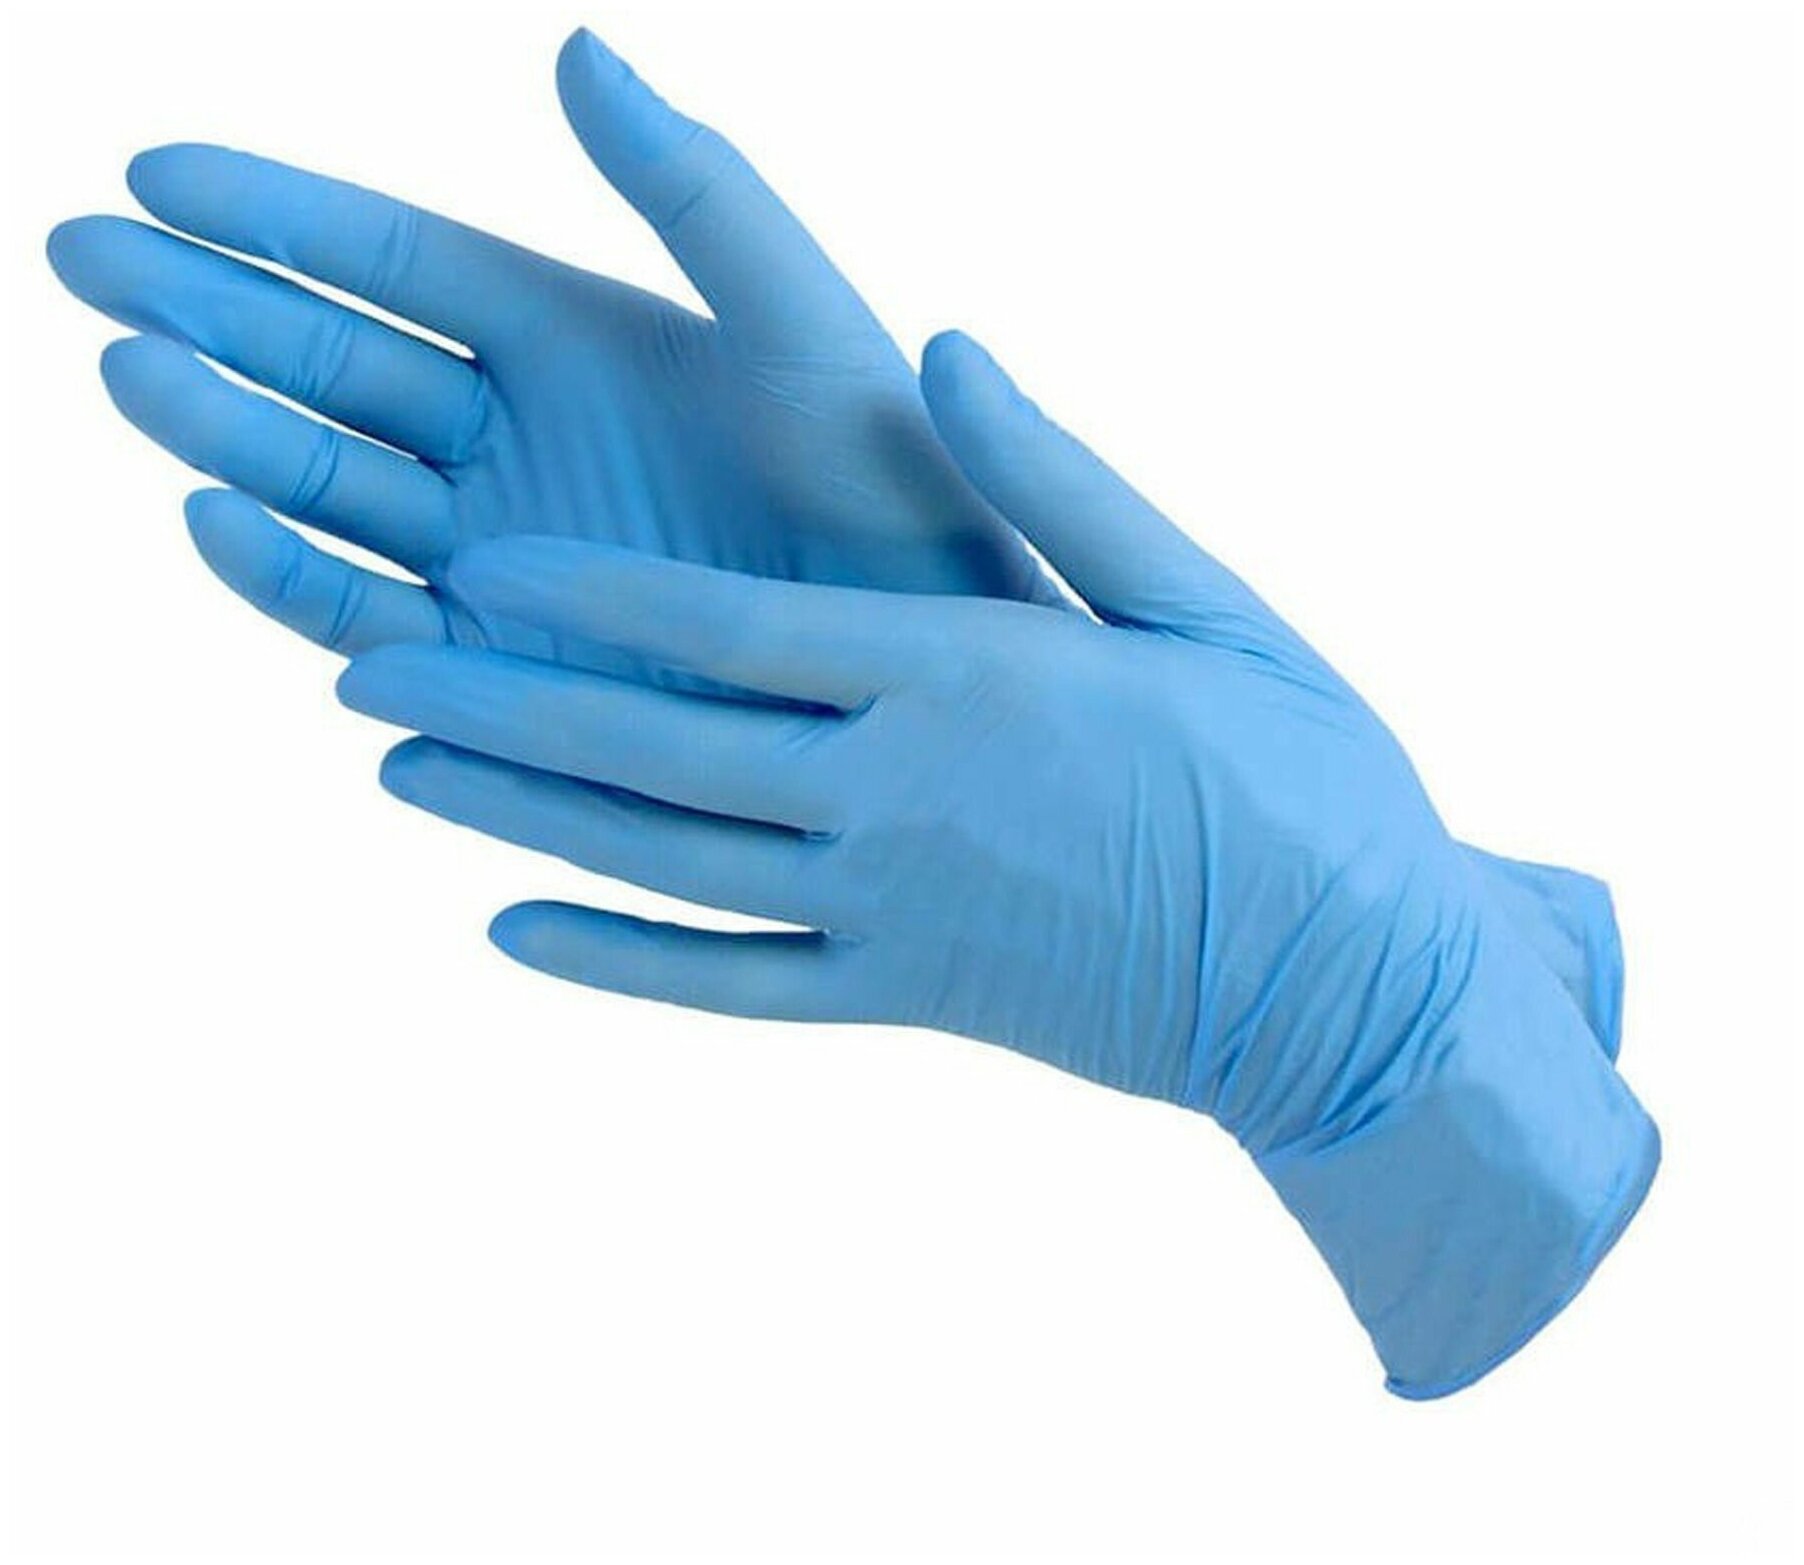 Перчатки маникюрные 100 штук, Перчатки KLEVER нитриловые, одноразовые, смотровые, неопудренные, р-р M, голубой, 50 пар.